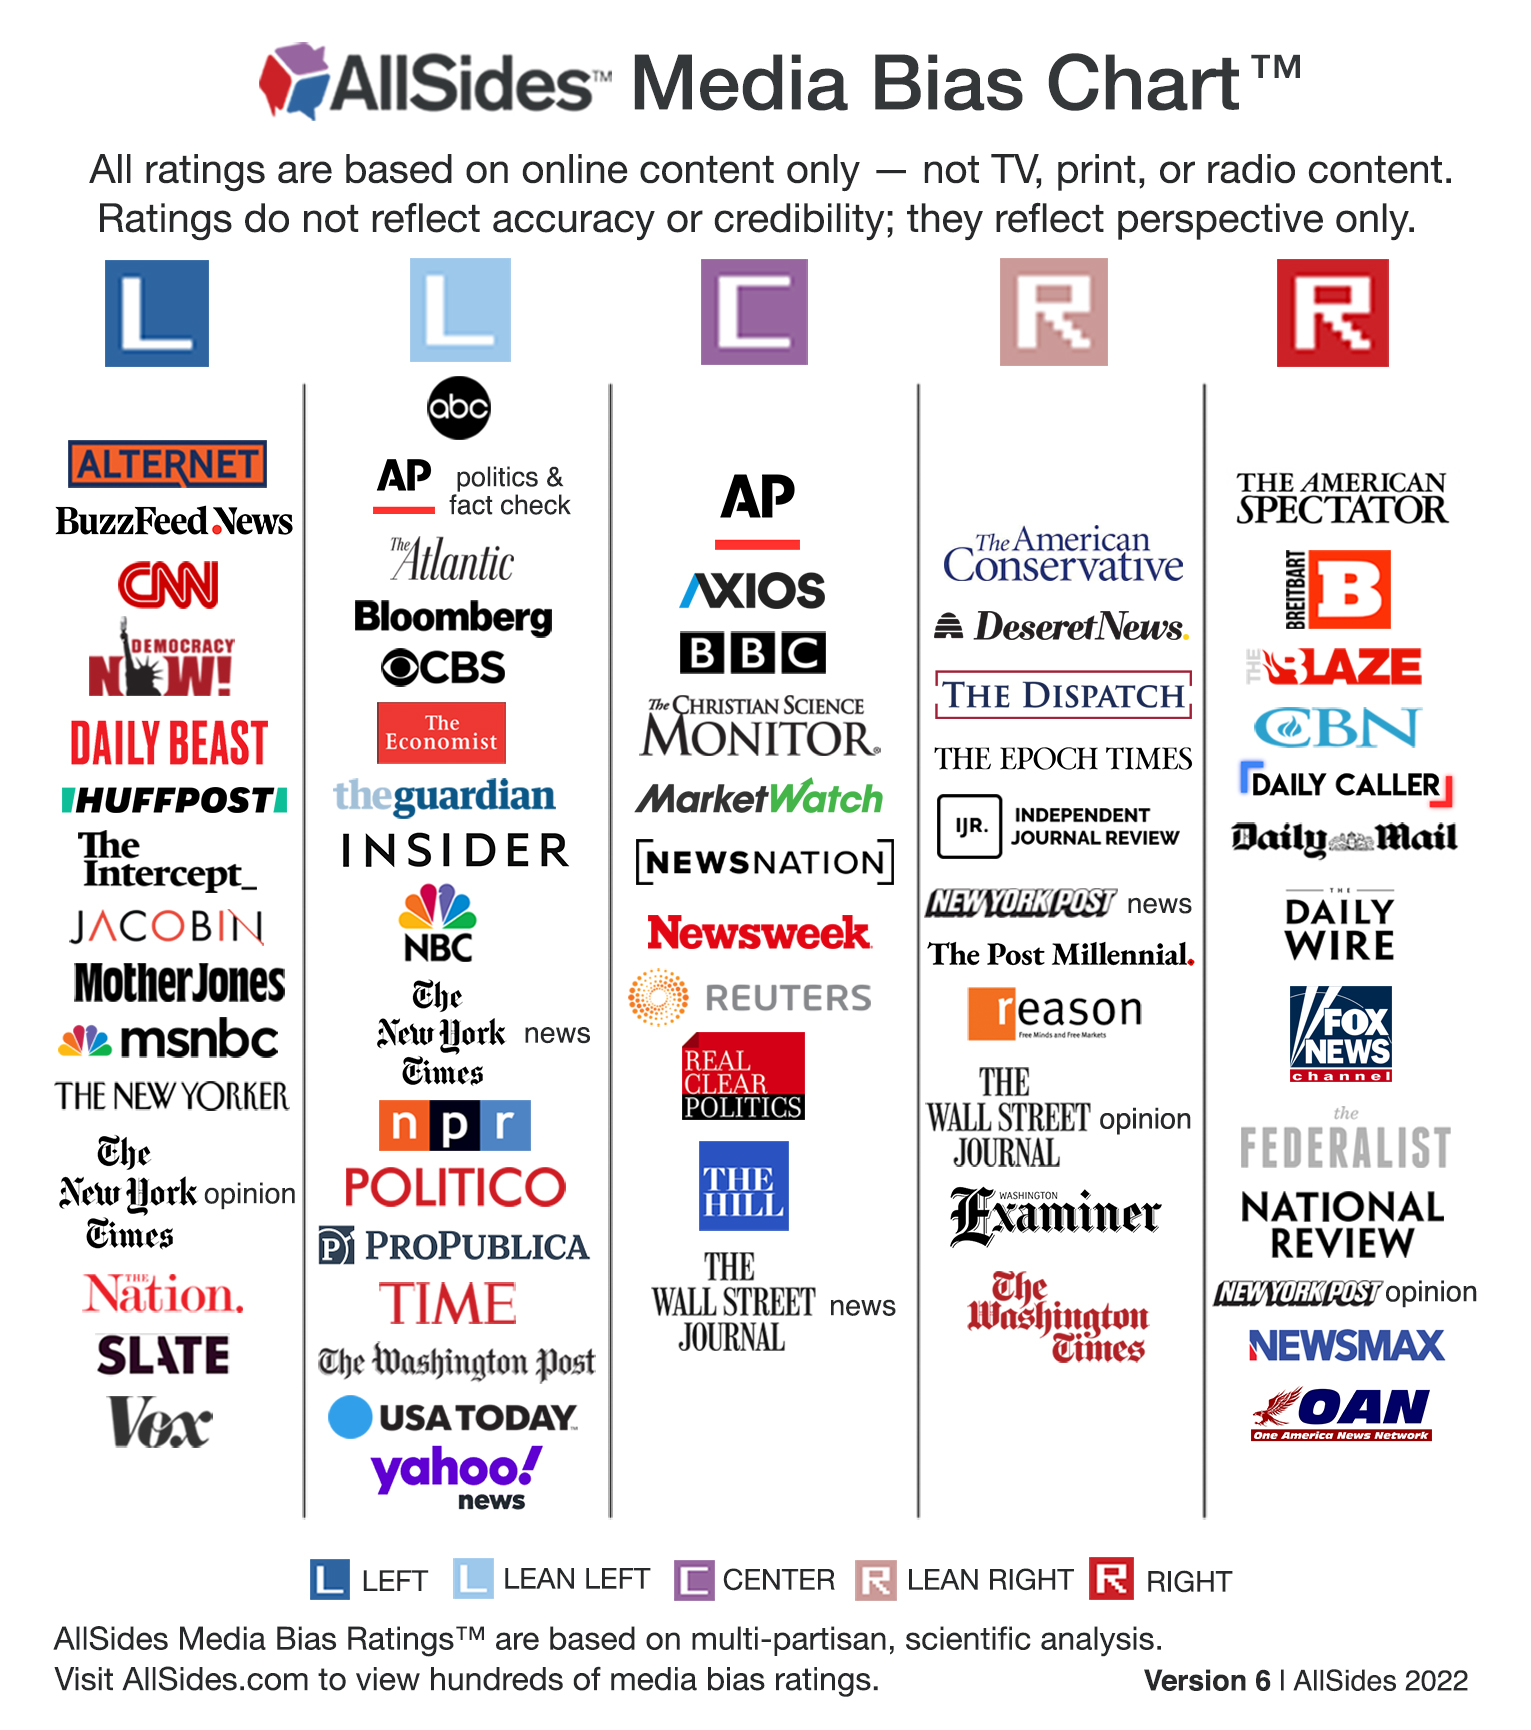 AllSides Media Bias Chart Version 6, 2022